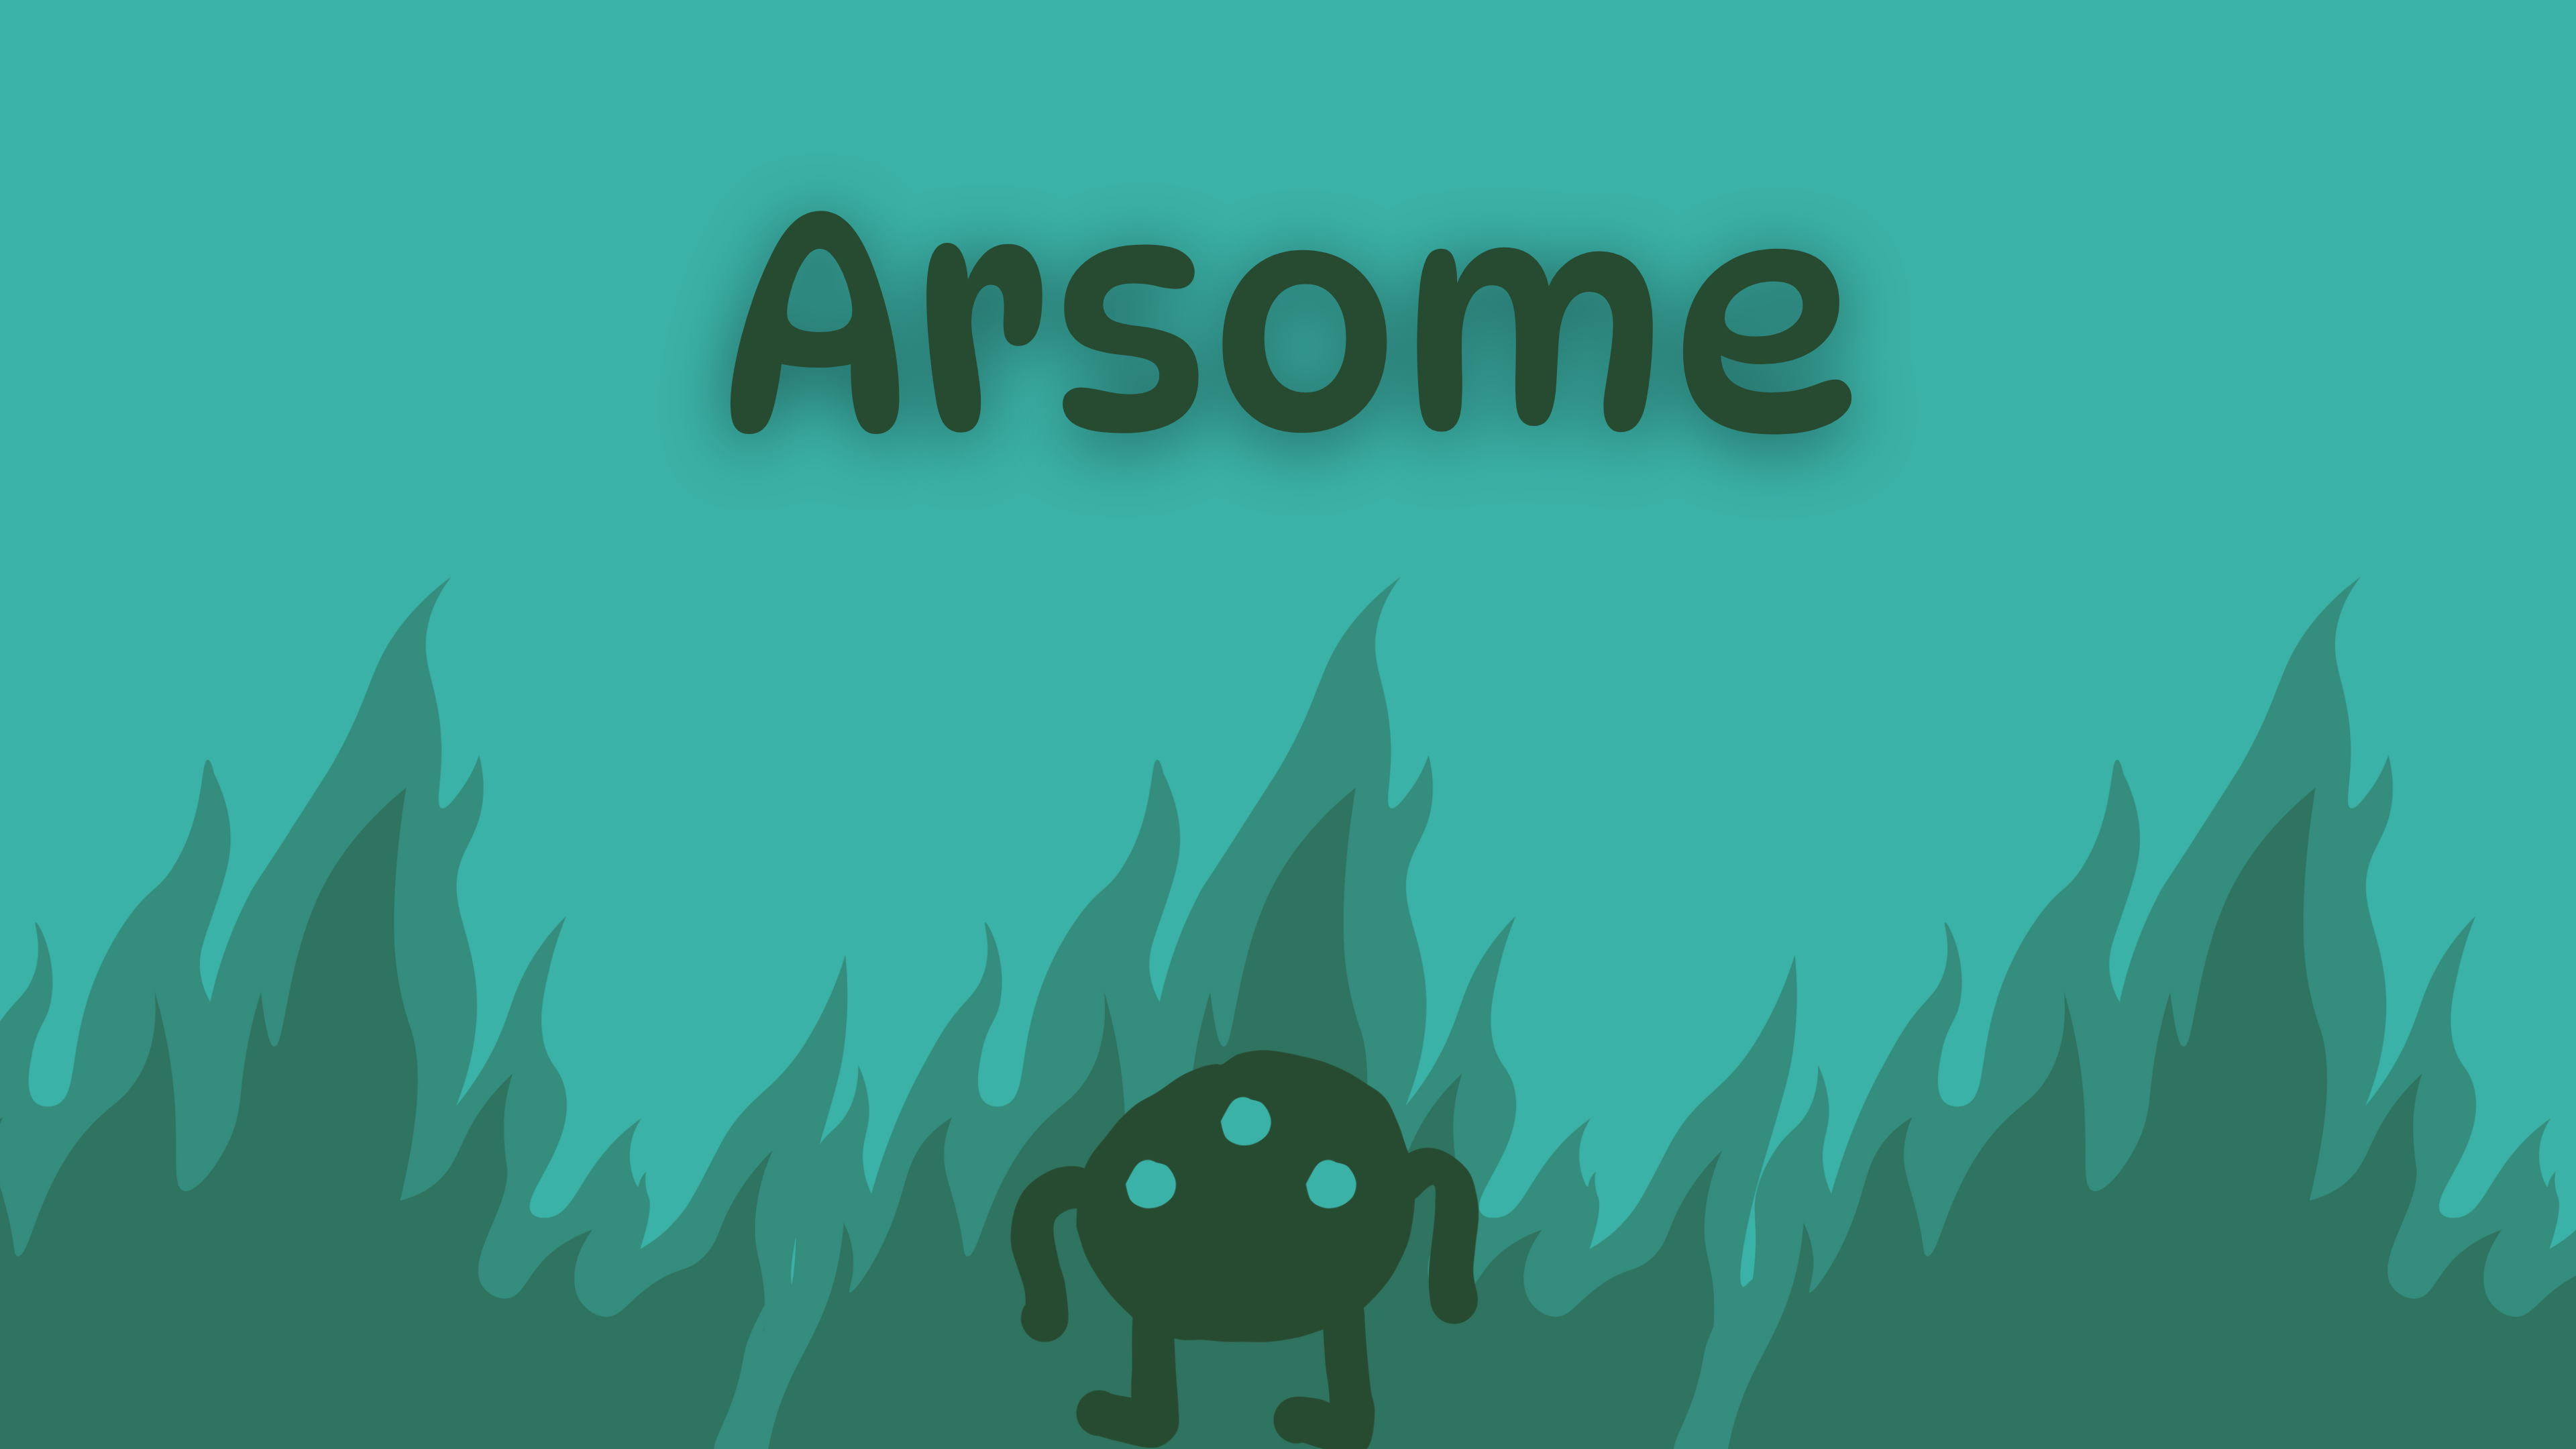 Arsome